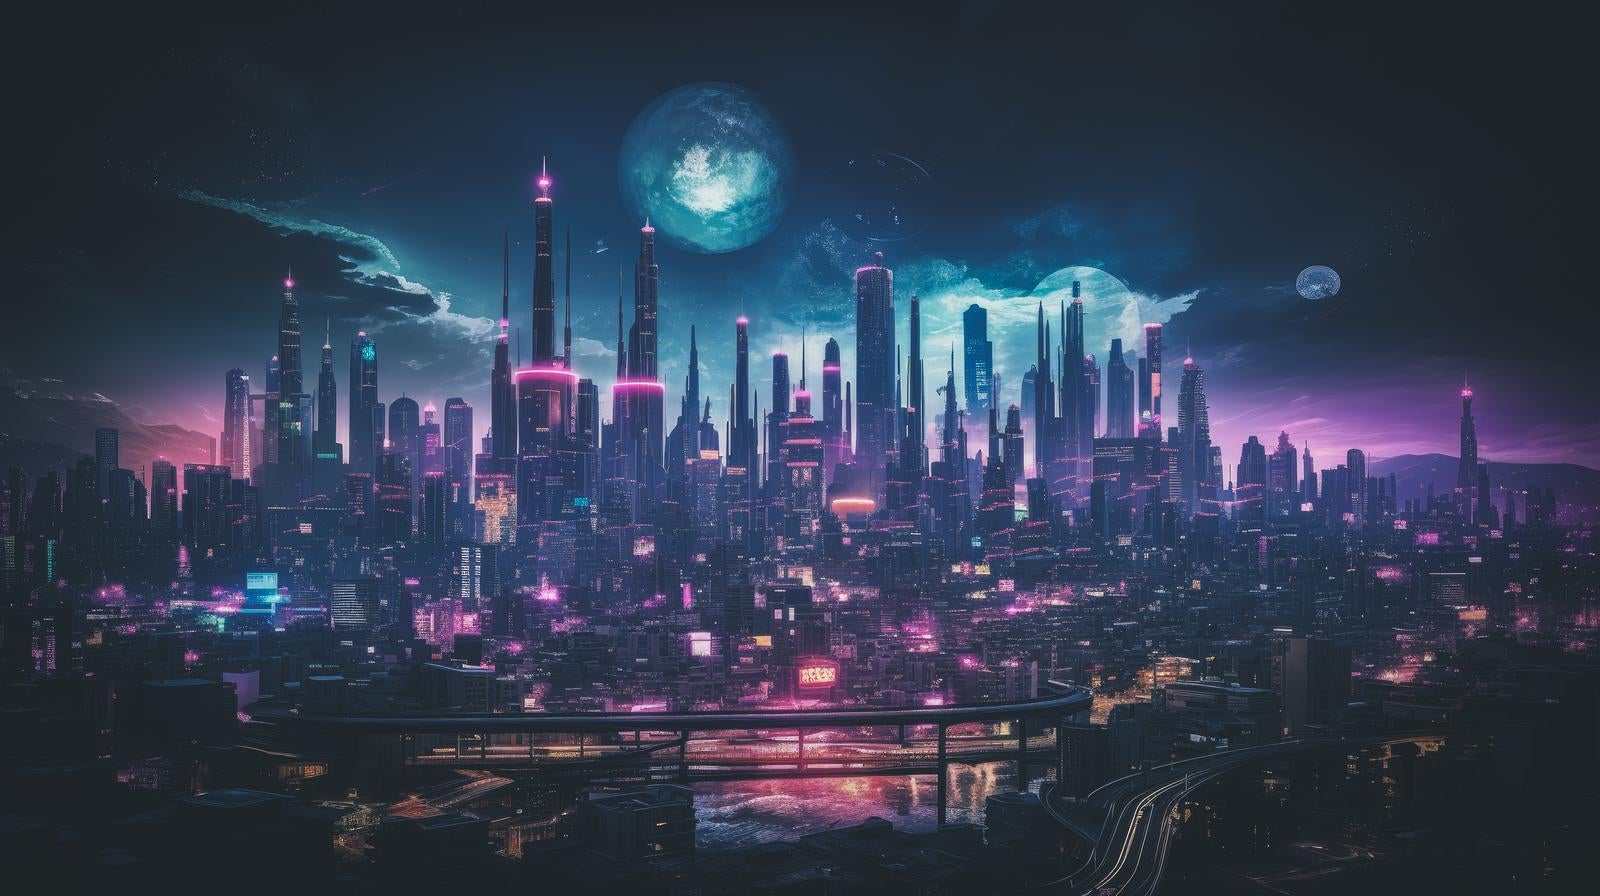 「紫色の怪しい光が街を覆う近未来都市」の写真